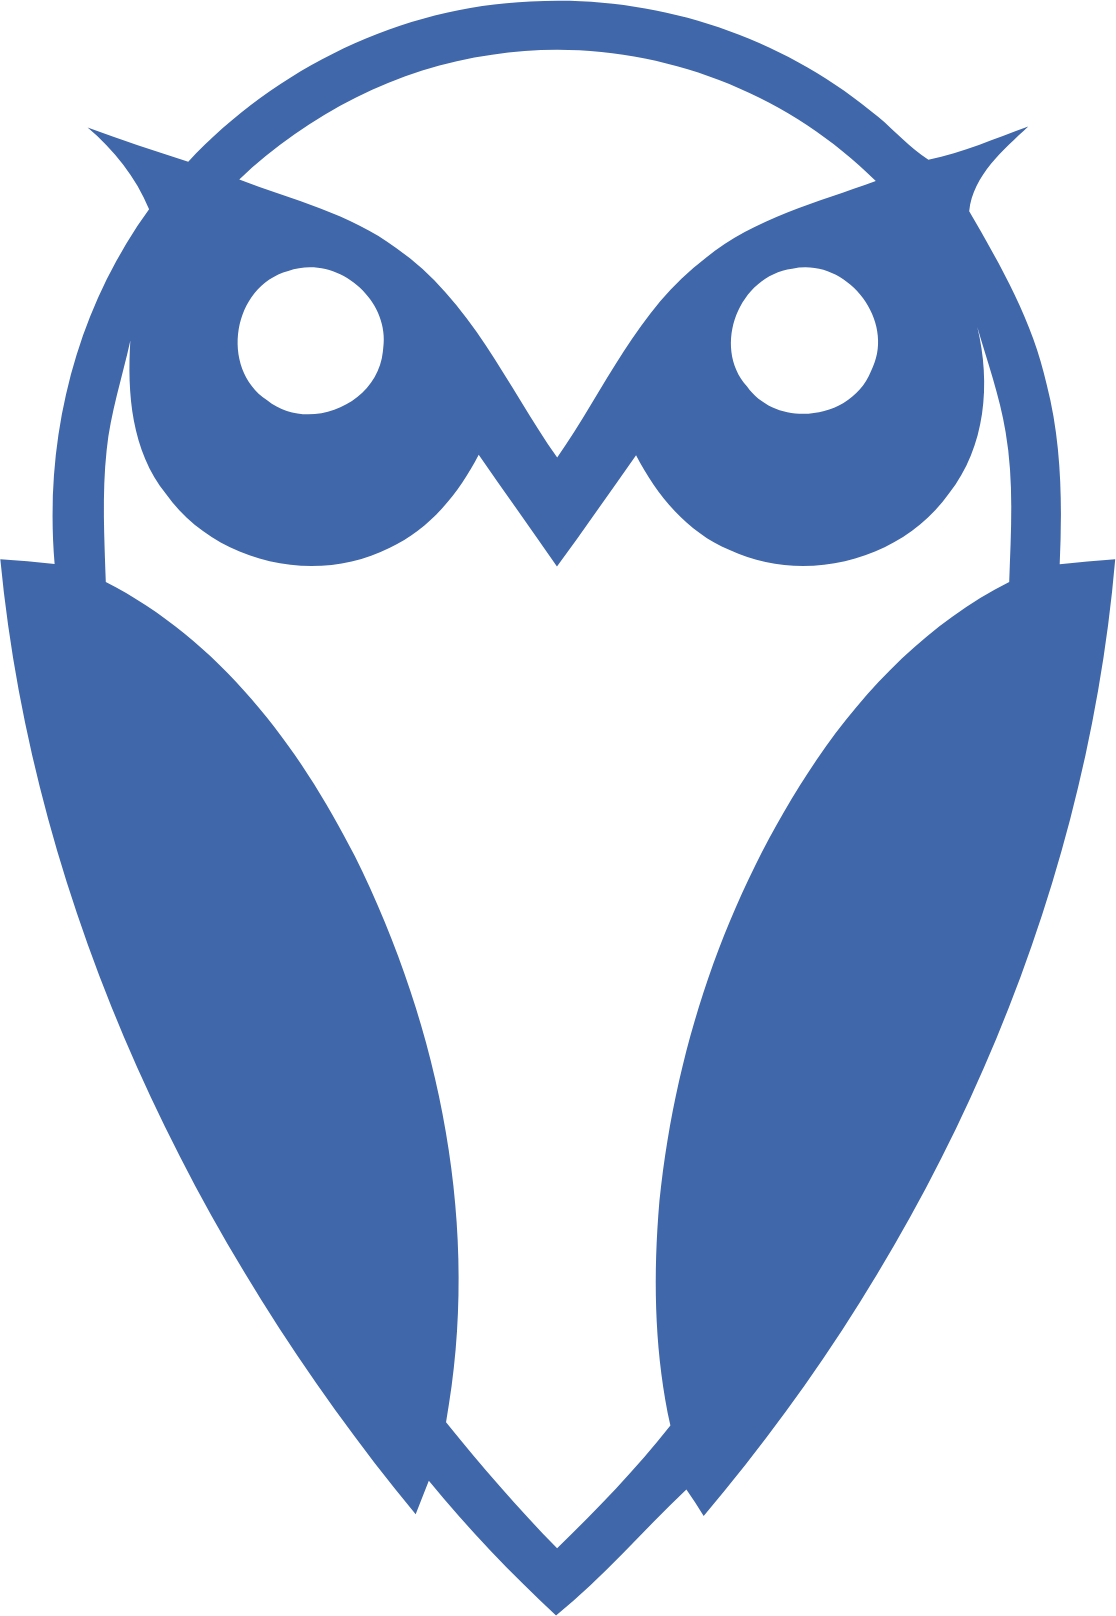 FinWise Bancorp logo (transparent PNG)